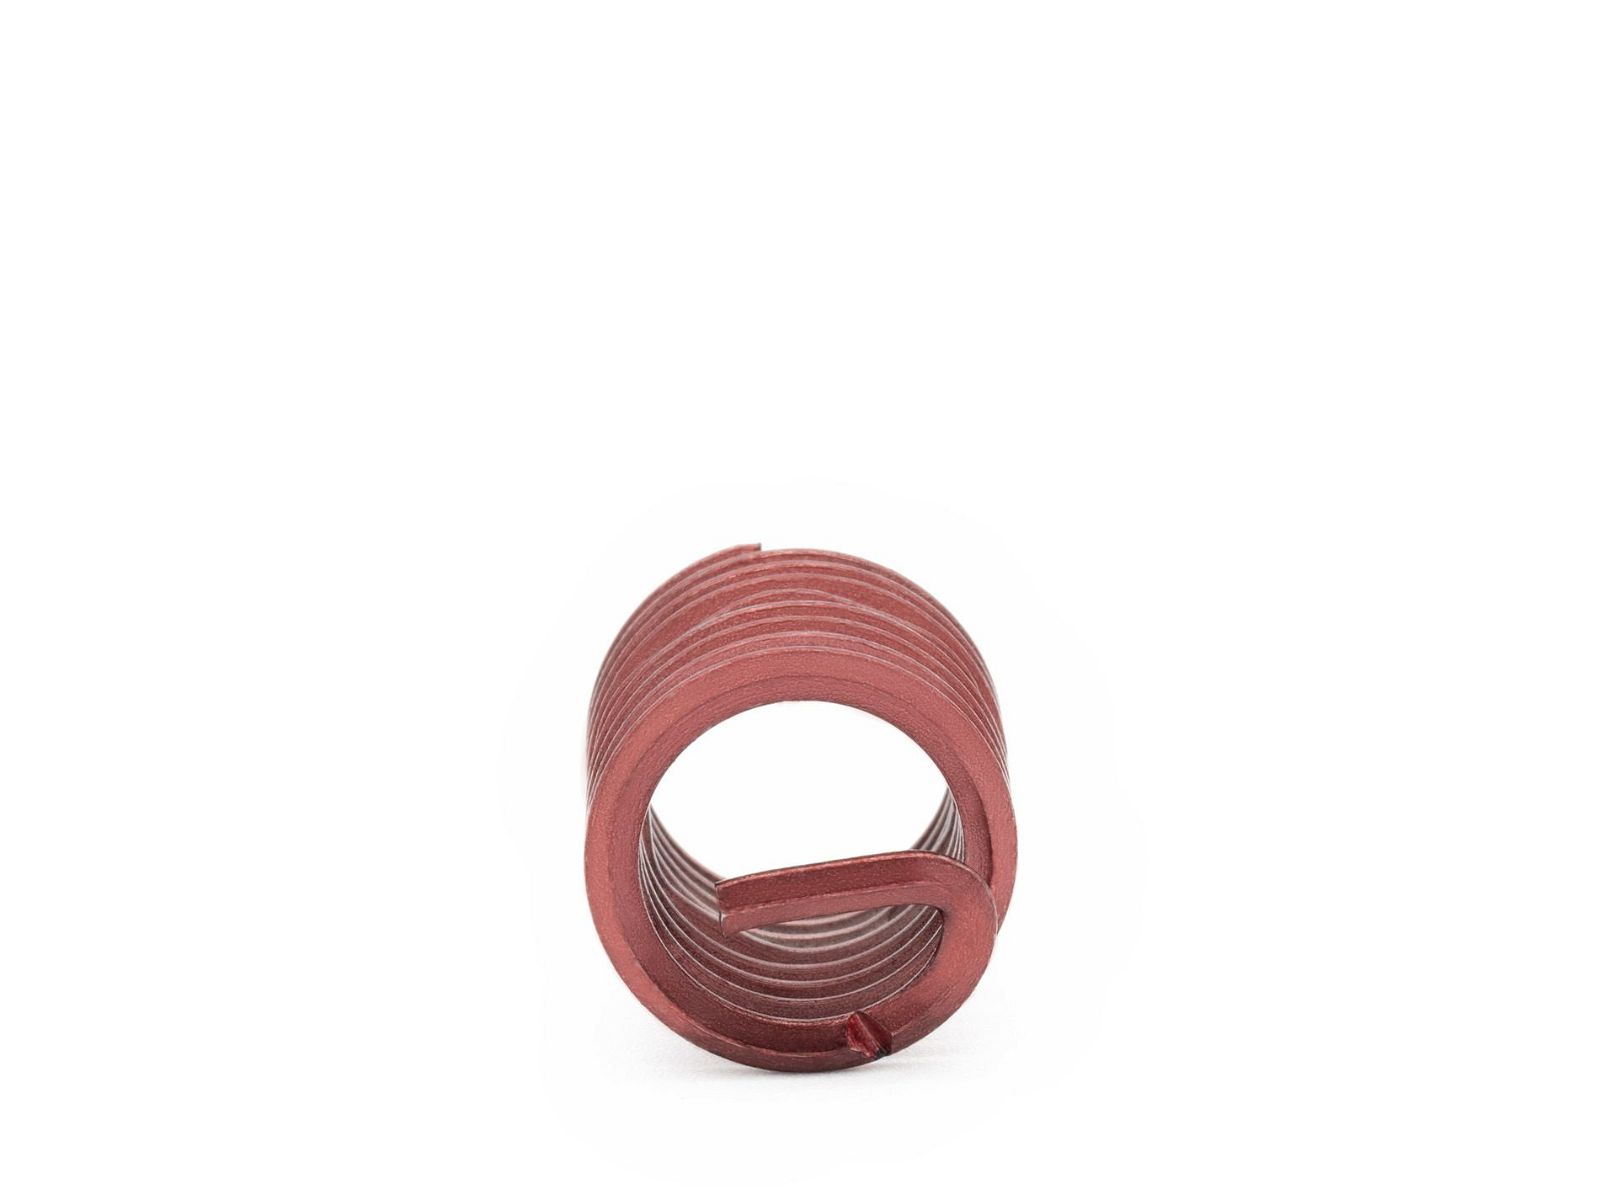 BaerCoil Wire Thread Inserts BSW 7/16 x 14 - 1.5 D (16.67 mm) - screw grip (screw locking) - 100 pcs.